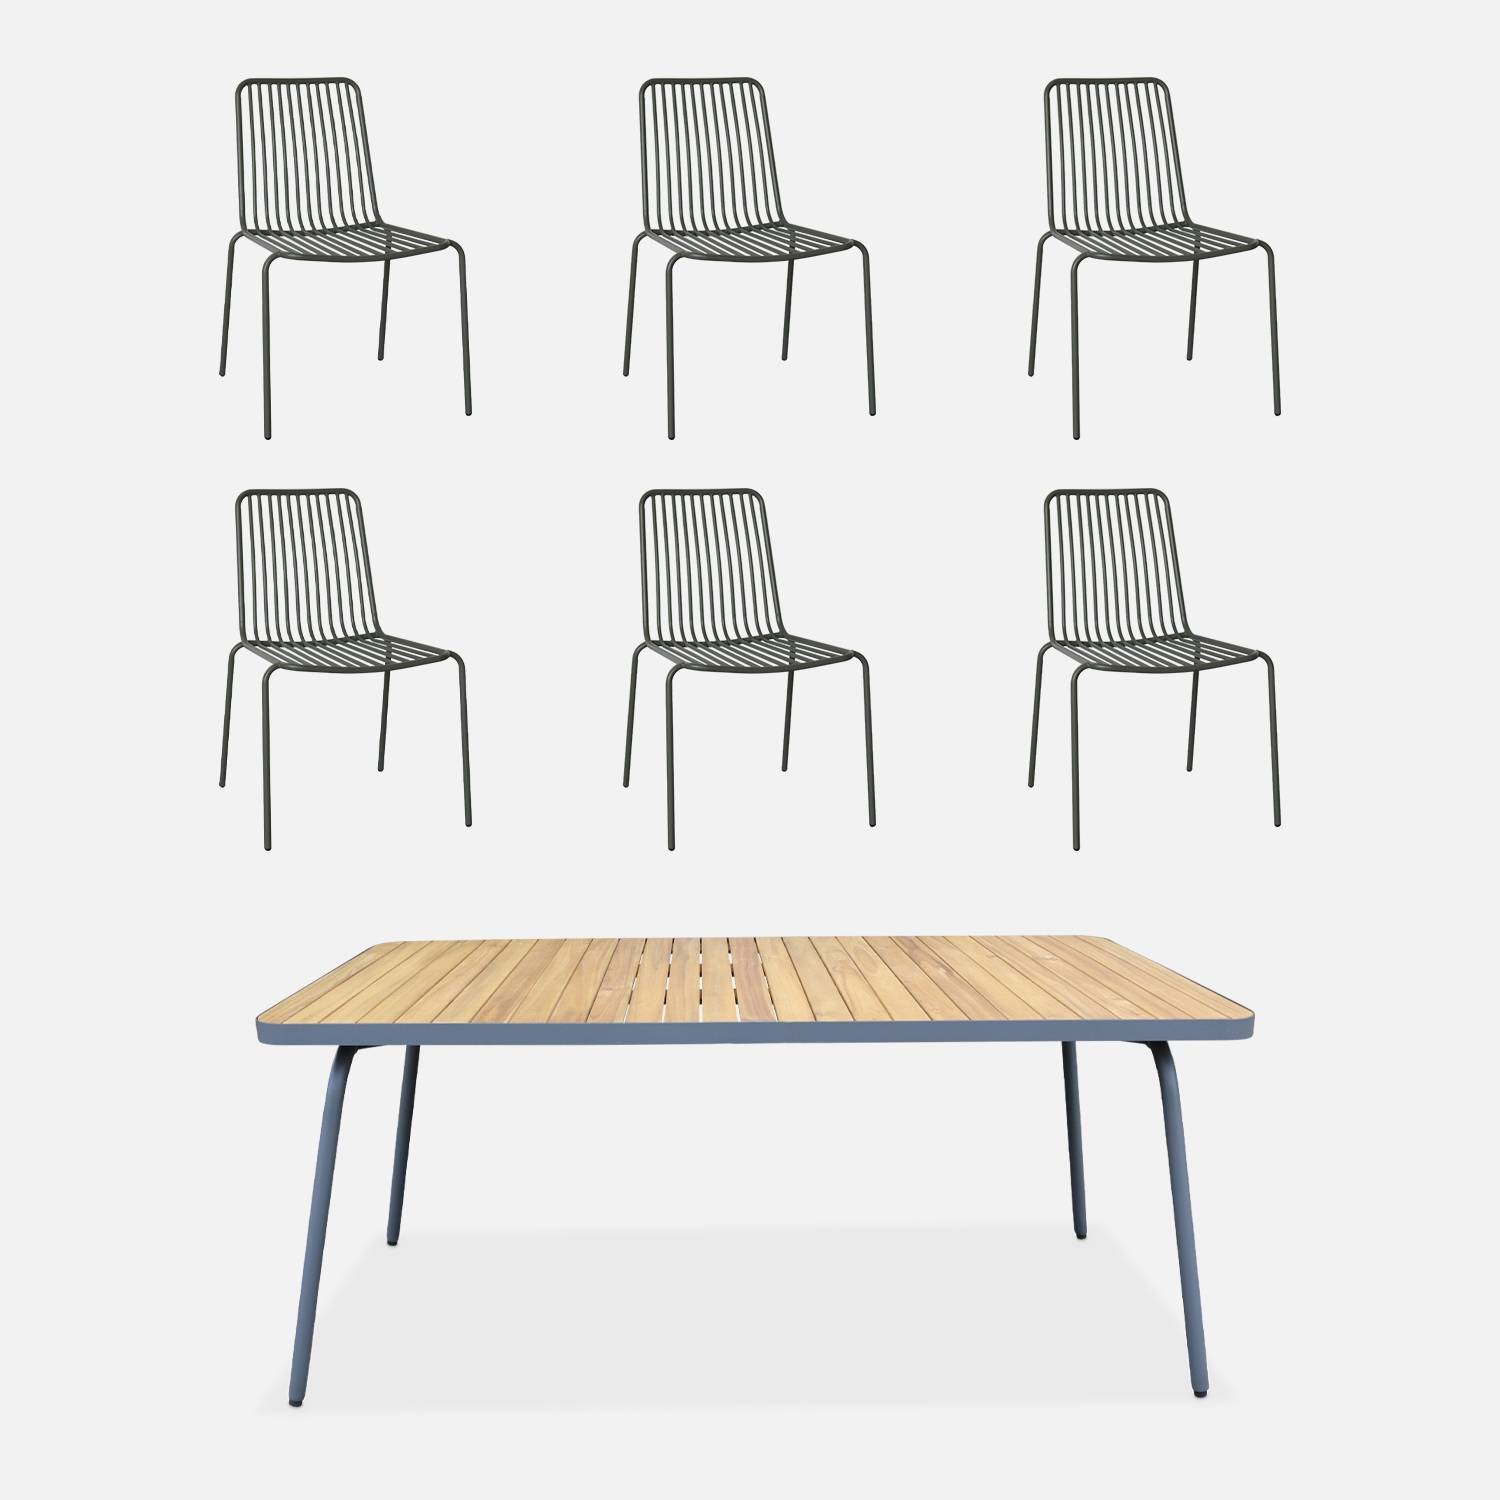 Table de jardin bois, acier + 6 chaises anthracite I sweeek 